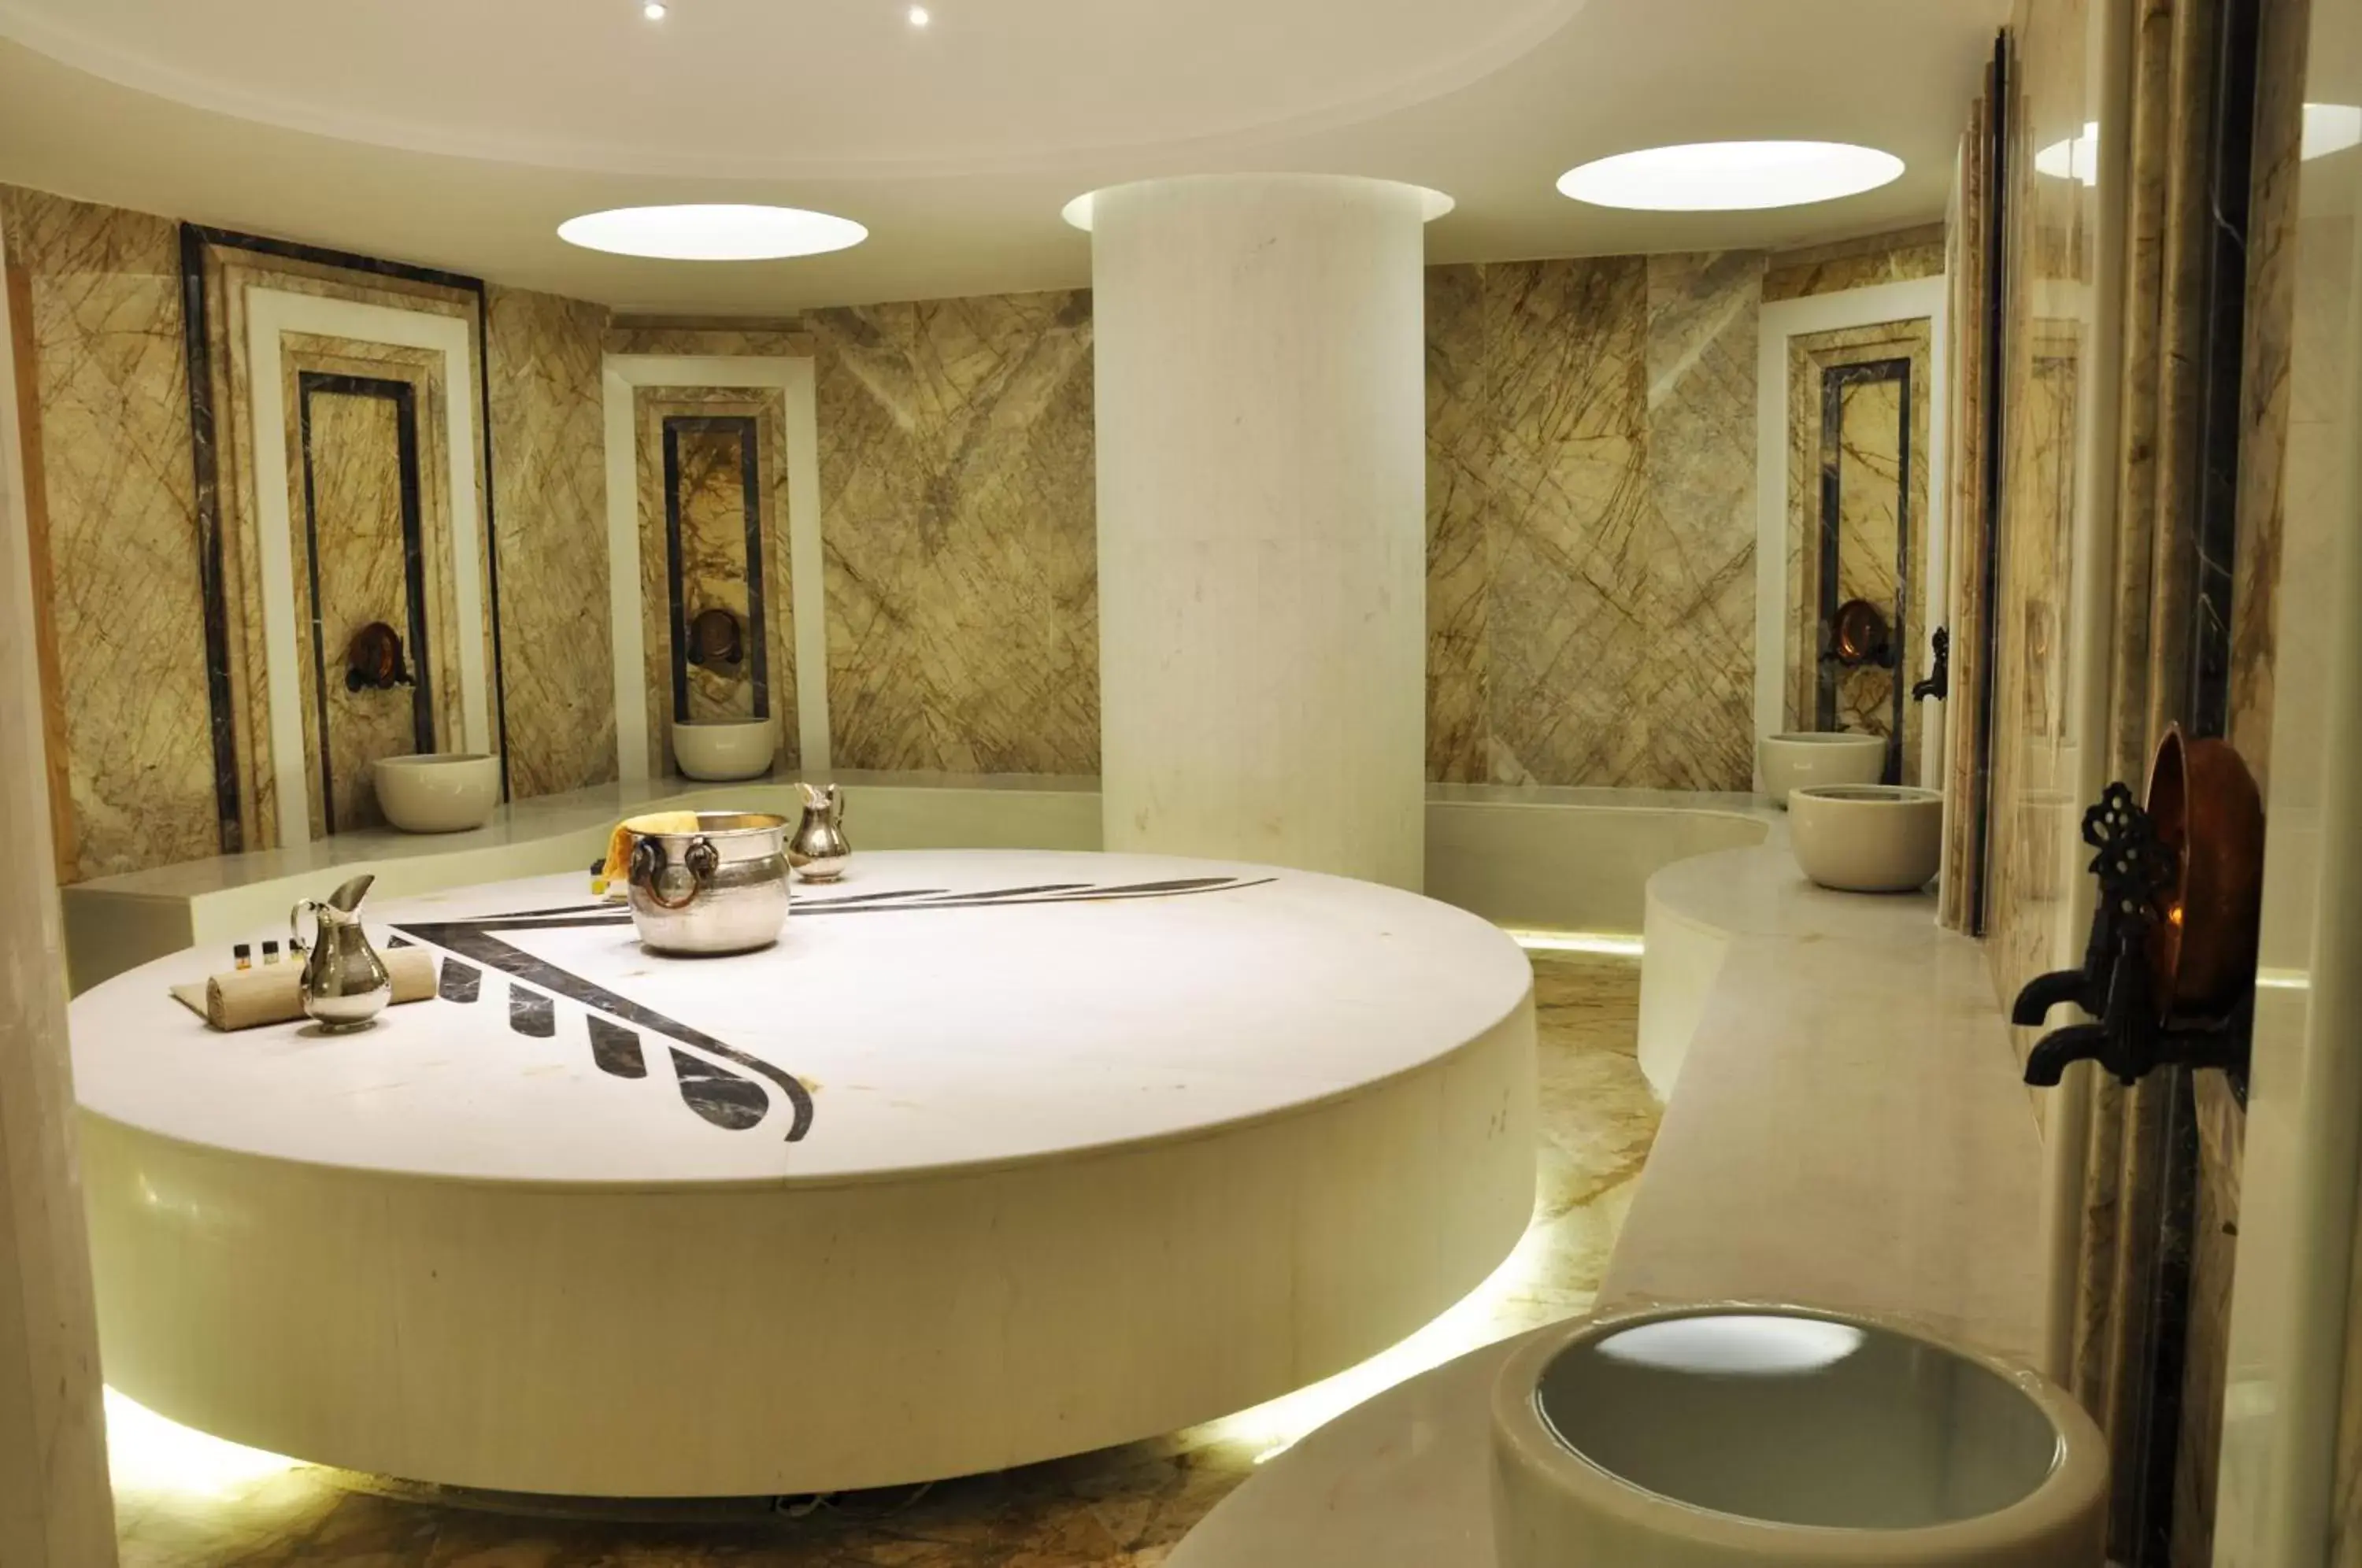 Public Bath, Bathroom in Veyron Hotels & SPA